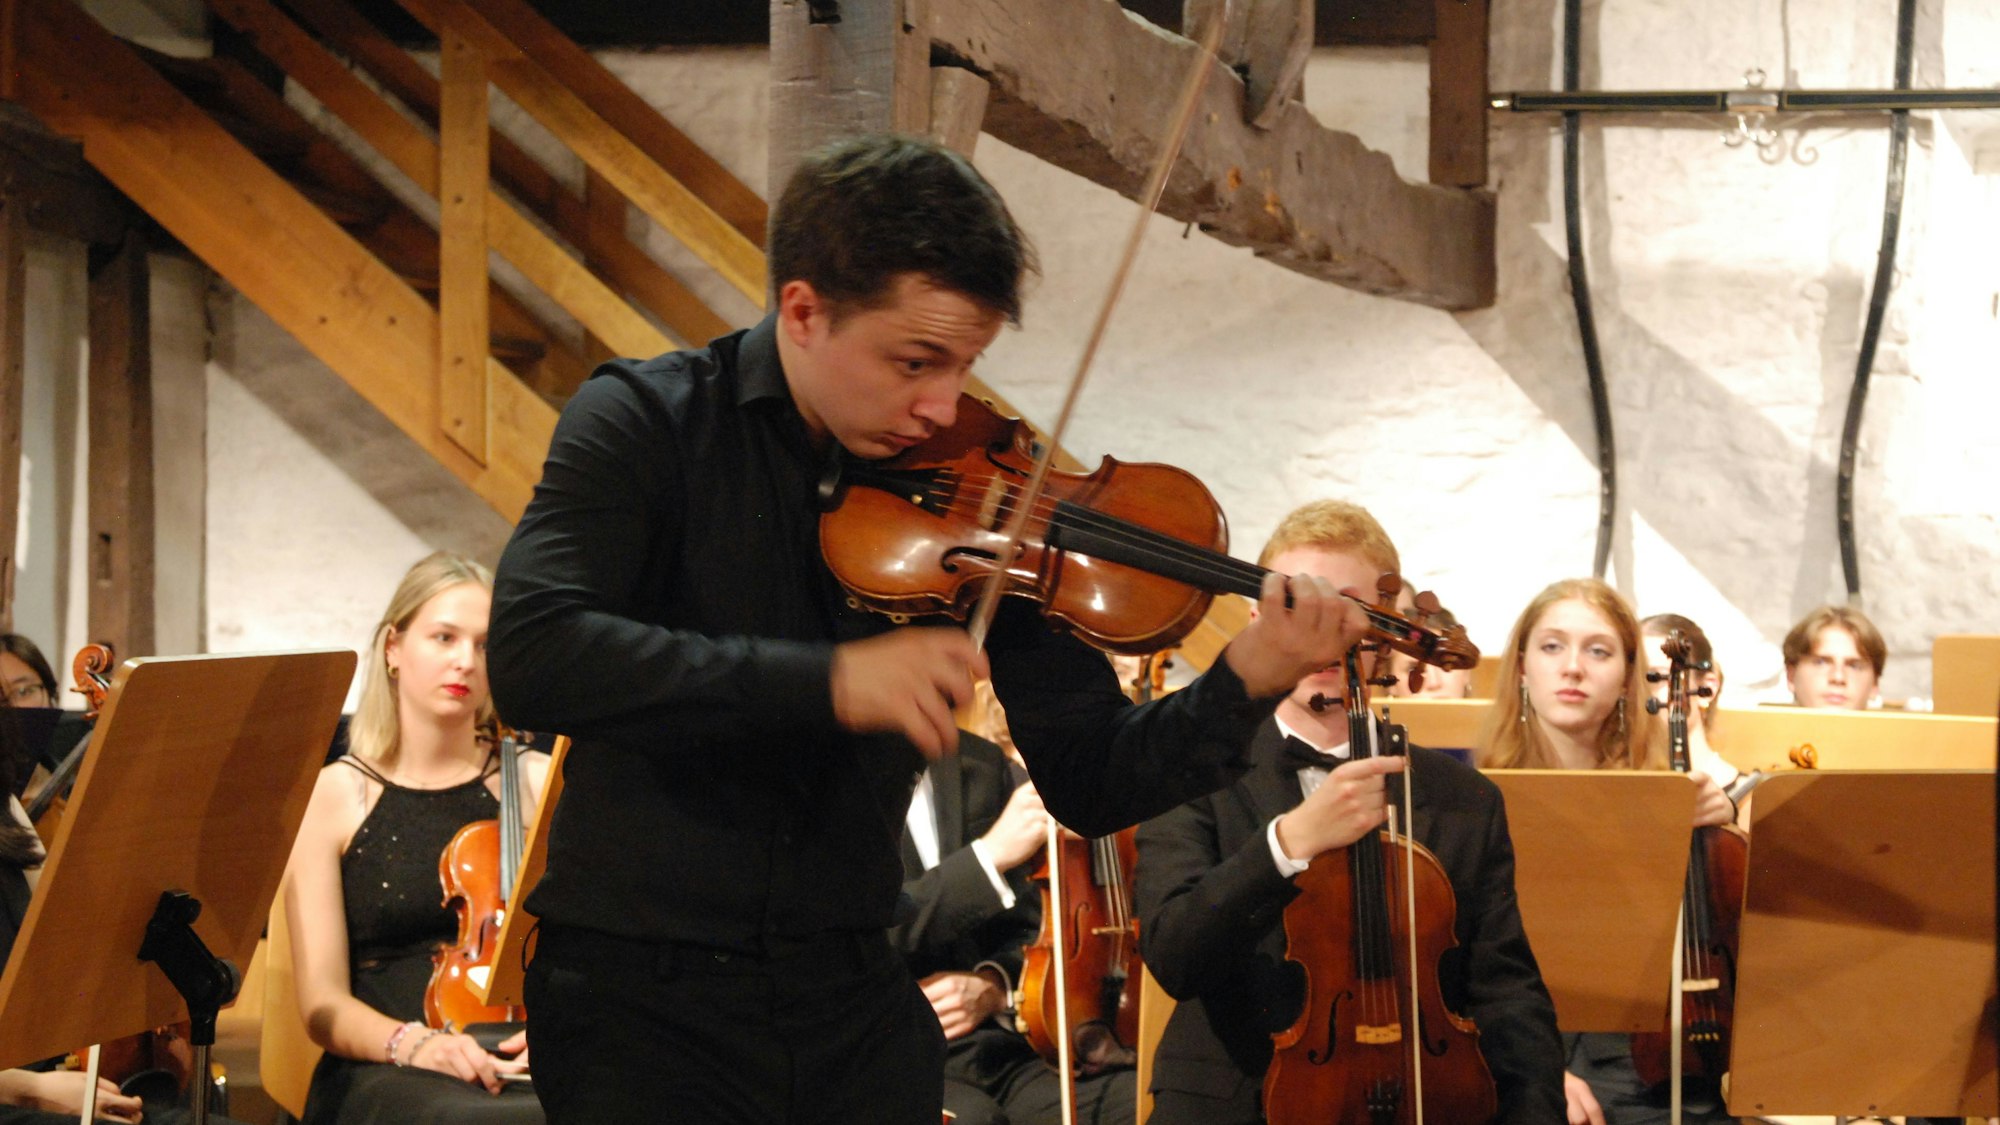 Der junge Geigenvirtuose Johan Dalene beim Spielen.